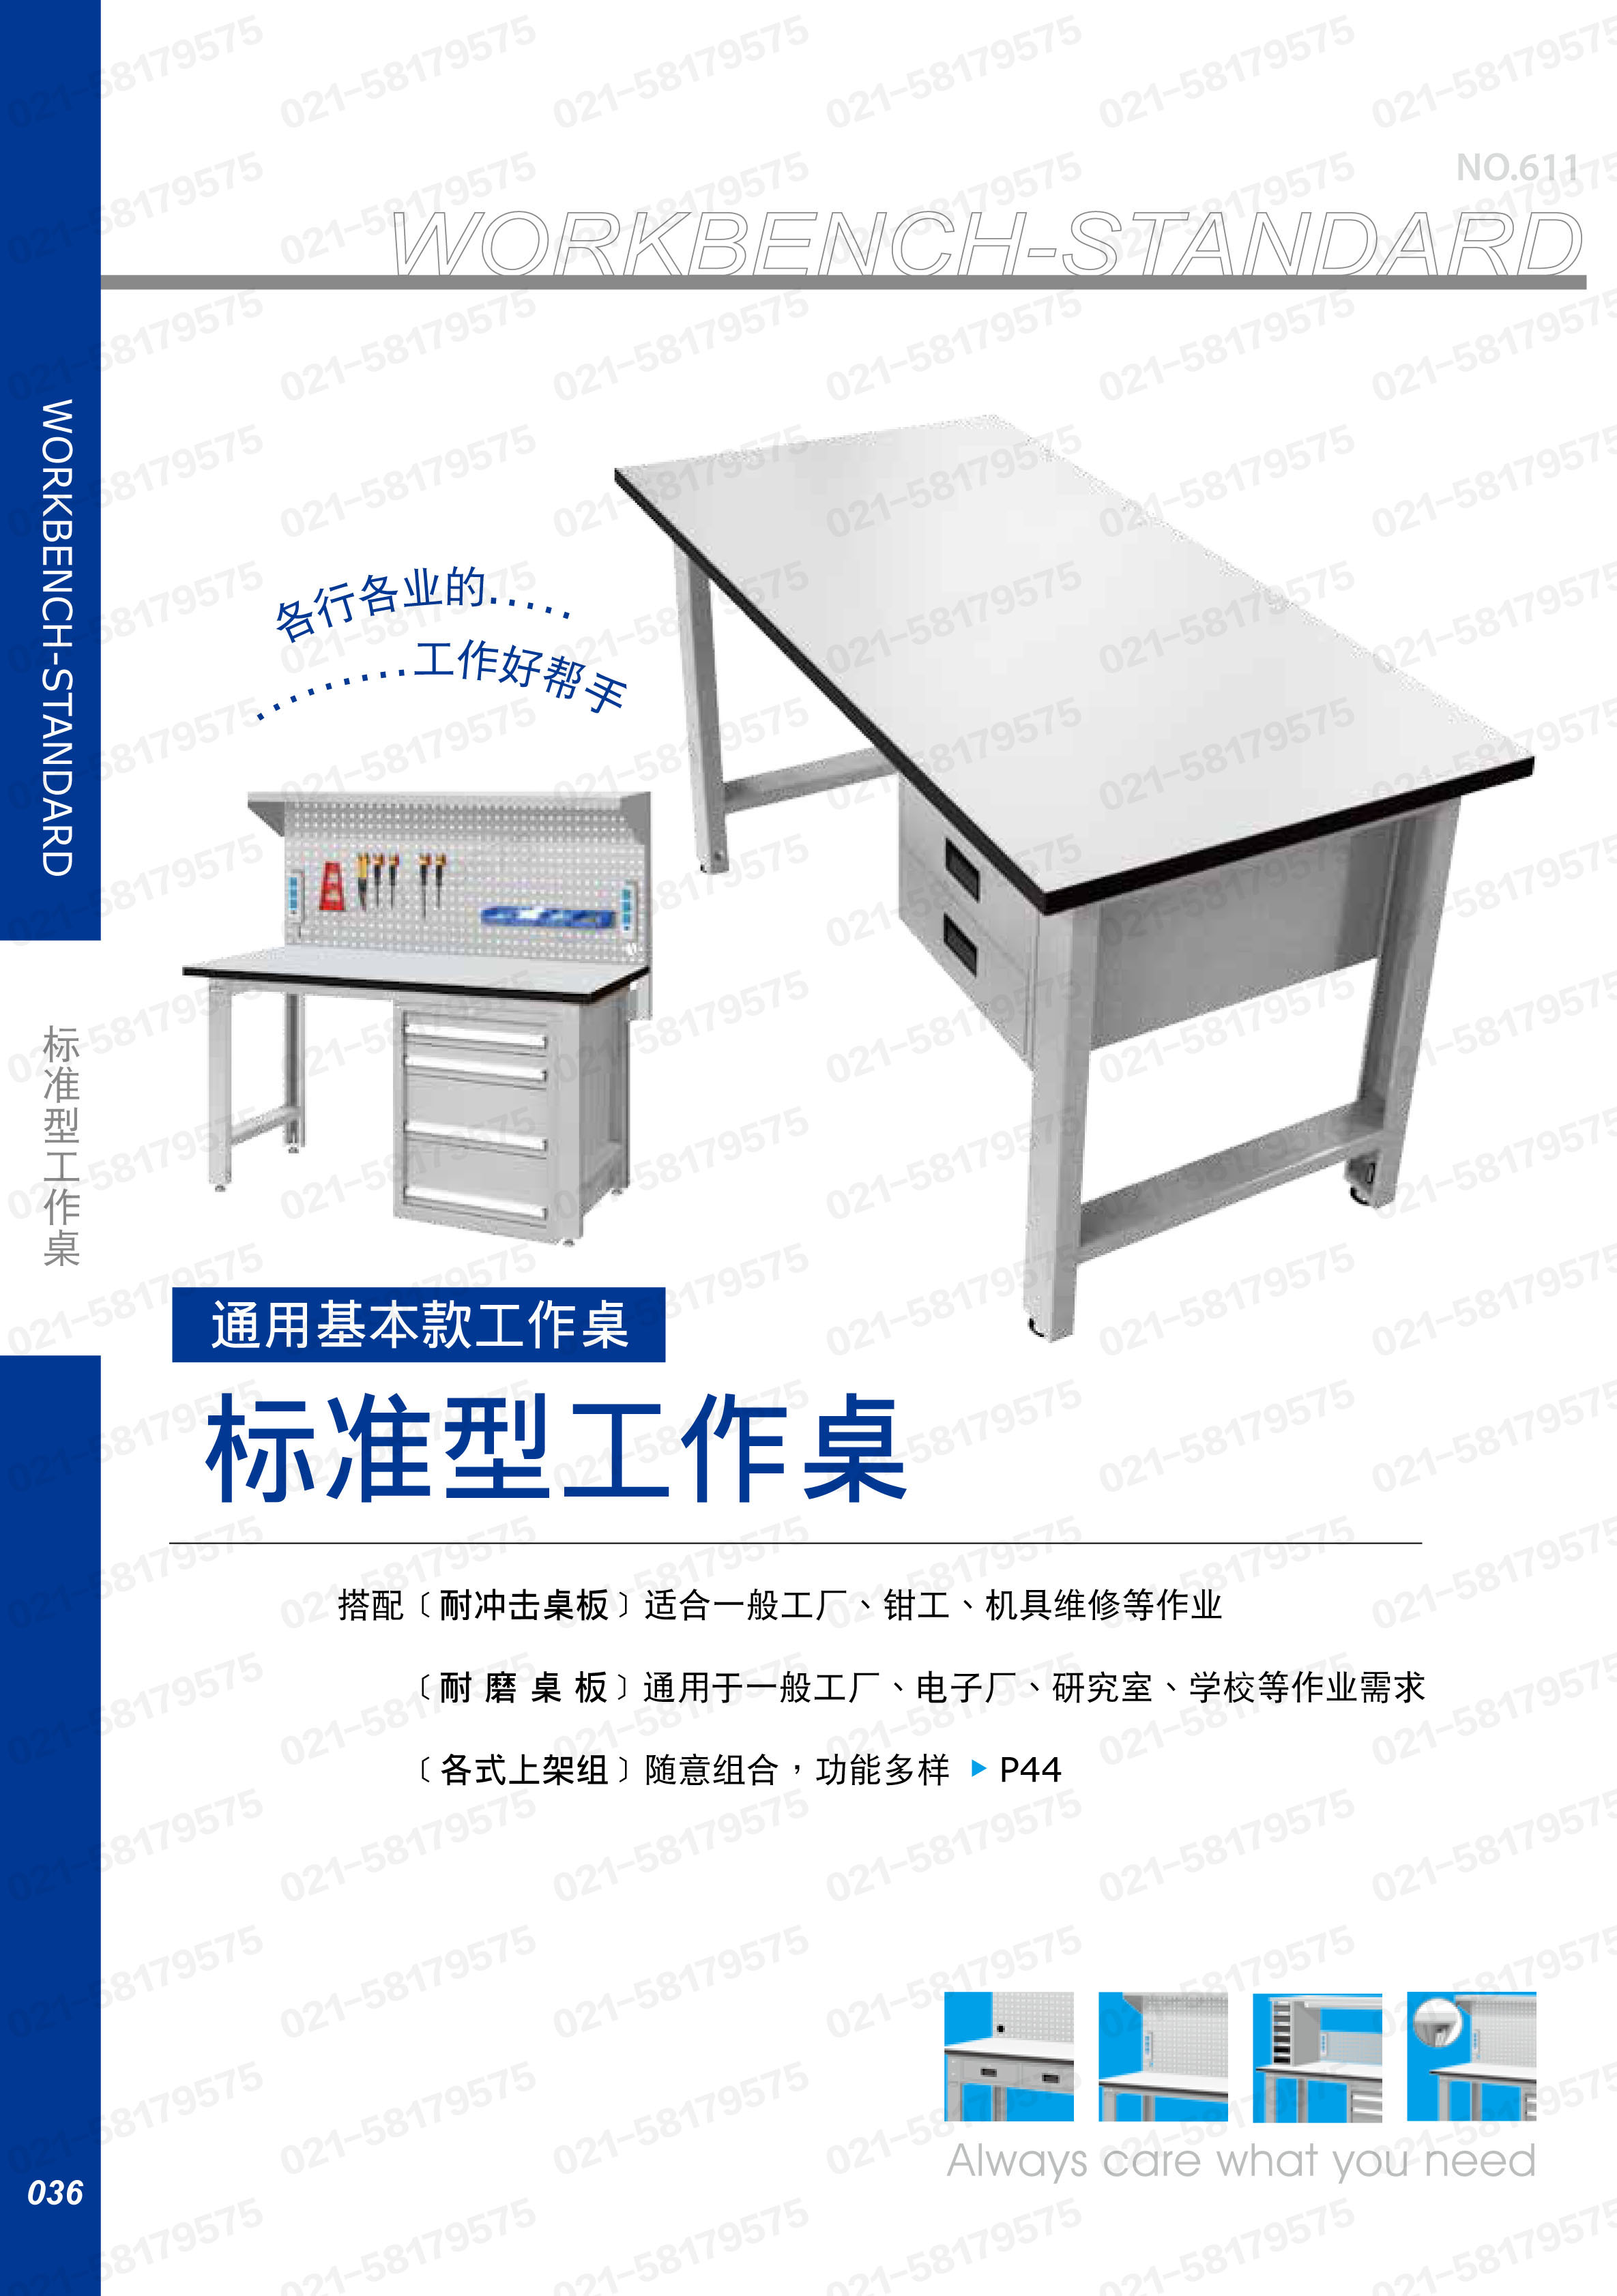 轻型工作桌1800×750×800mm 原木桌板 带双吊抽,WBS-63021W,5D2939